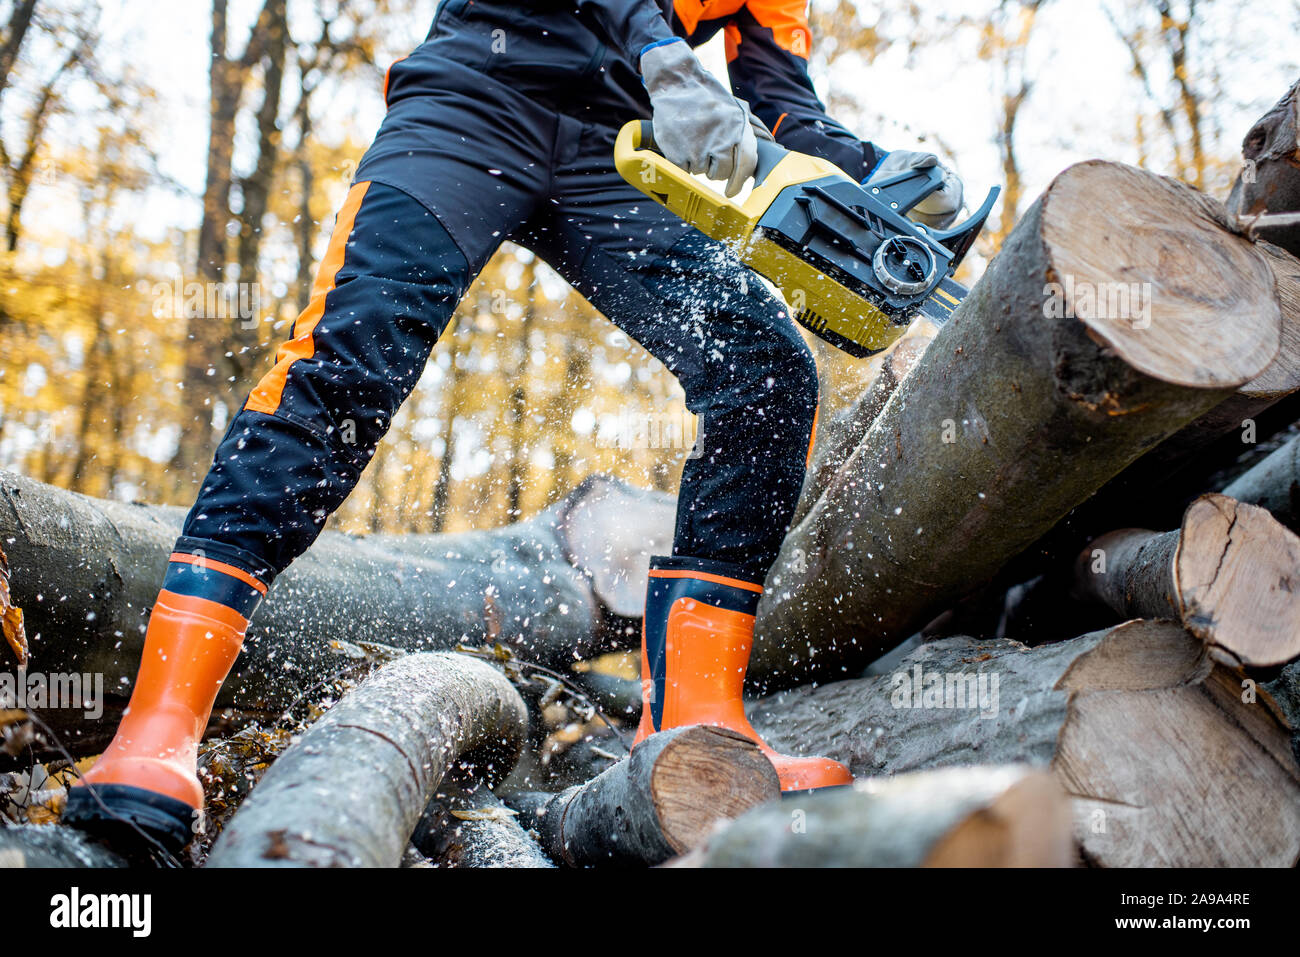 Professionelle Holzfäller in schützende Arbeitskleidung arbeiten mit der Motorsäge im Wald, sägen Holz- Protokolle, Nahaufnahme mit kein Gesicht Stockfoto